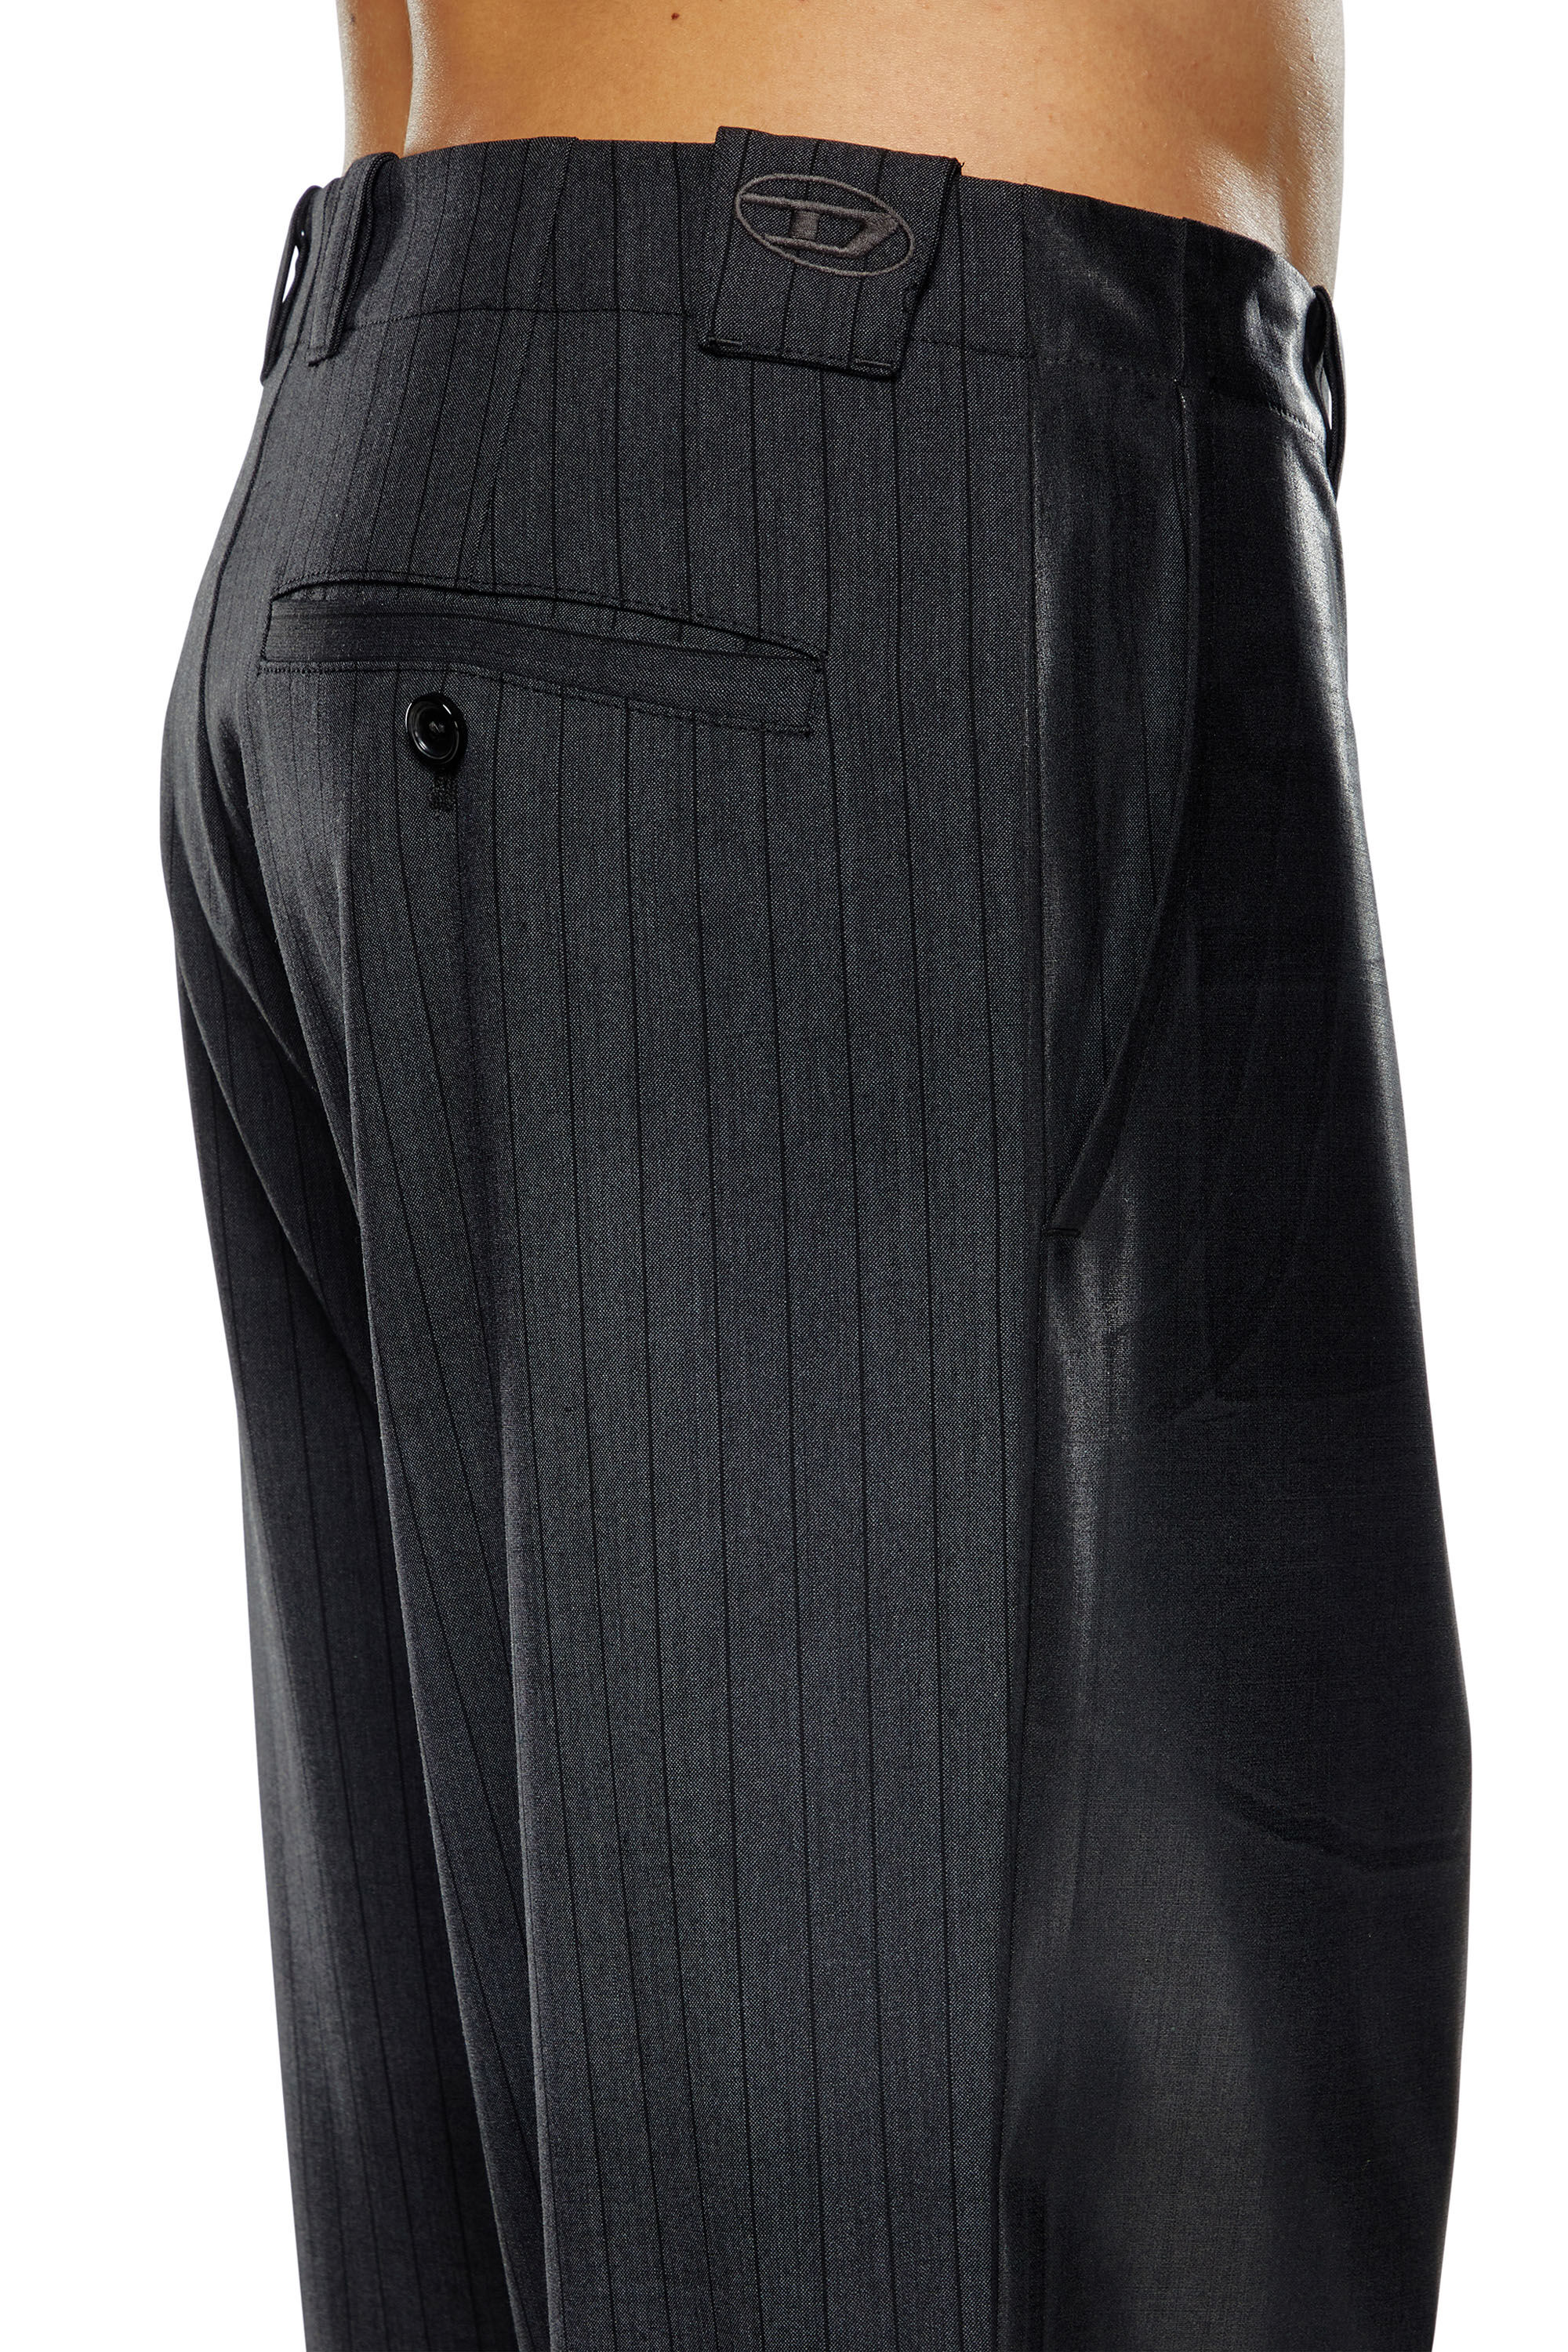 Diesel - P-STANLEY, Homme Pantalon à fines rayures avec devant enduit in Noir - Image 5